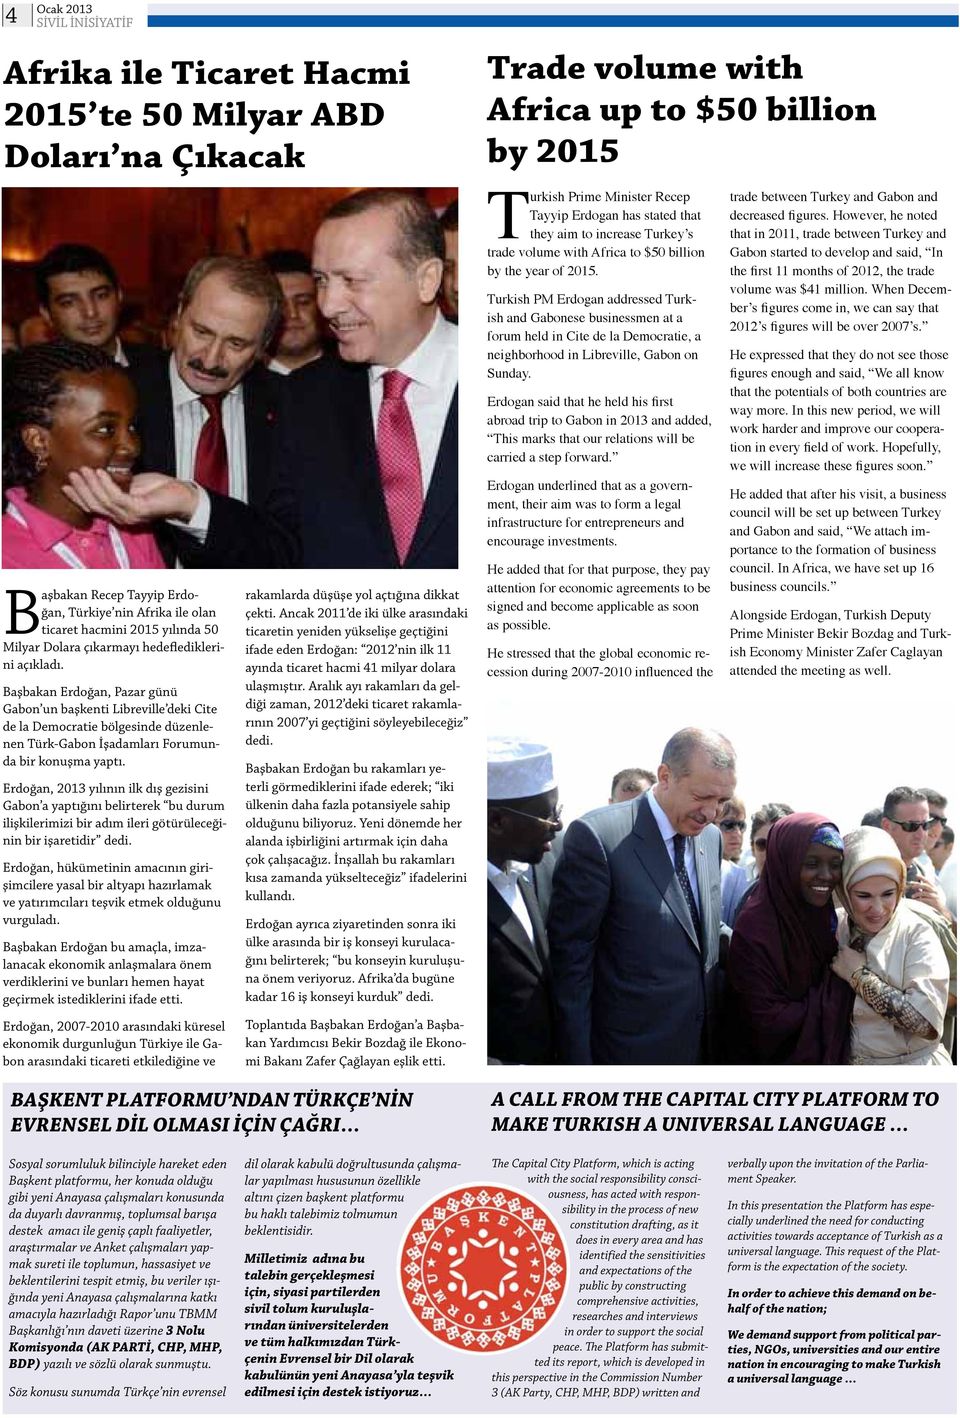 Erdoğan, 2013 yılının ilk dış gezisini Gabon a yaptığını belirterek bu durum ilişkilerimizi bir adım ileri götürüleceğinin bir işaretidir dedi.